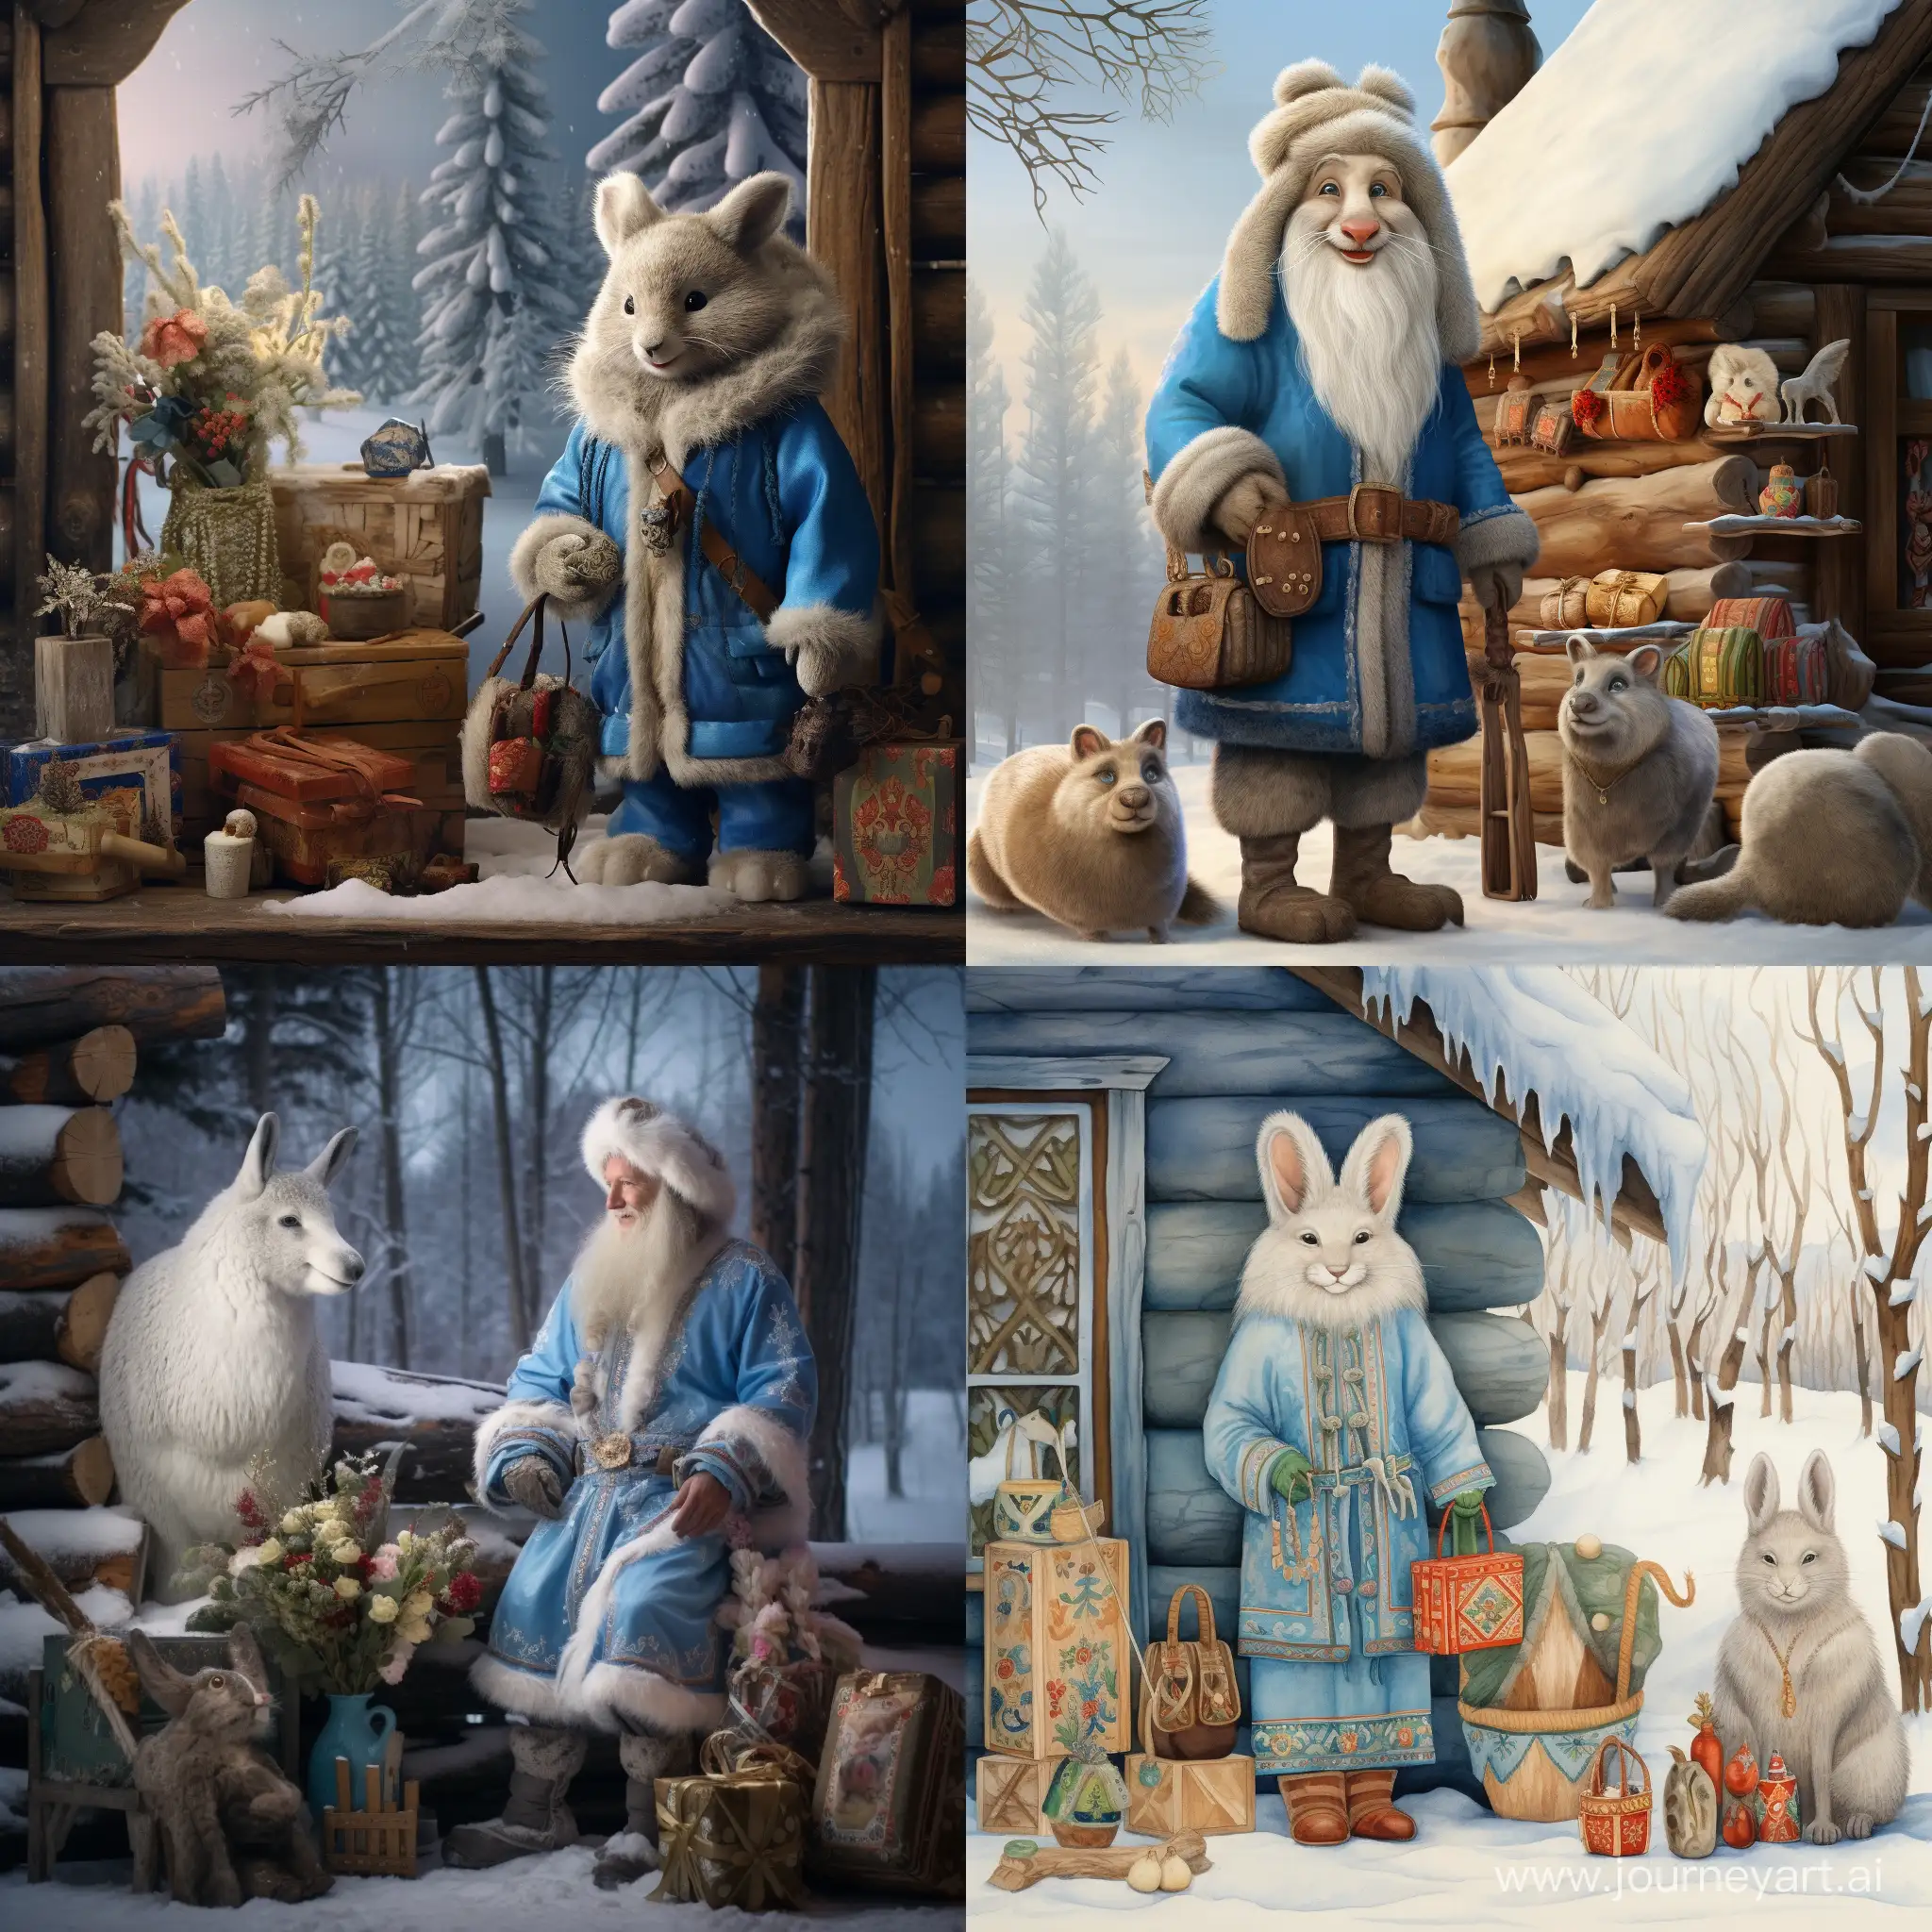 Дед Мороз в синем тулупе и валенках в зимнем лесу у бревенчатого домика с зайцами и белками. Снегурочка улыбается и стоит с мешком подарков